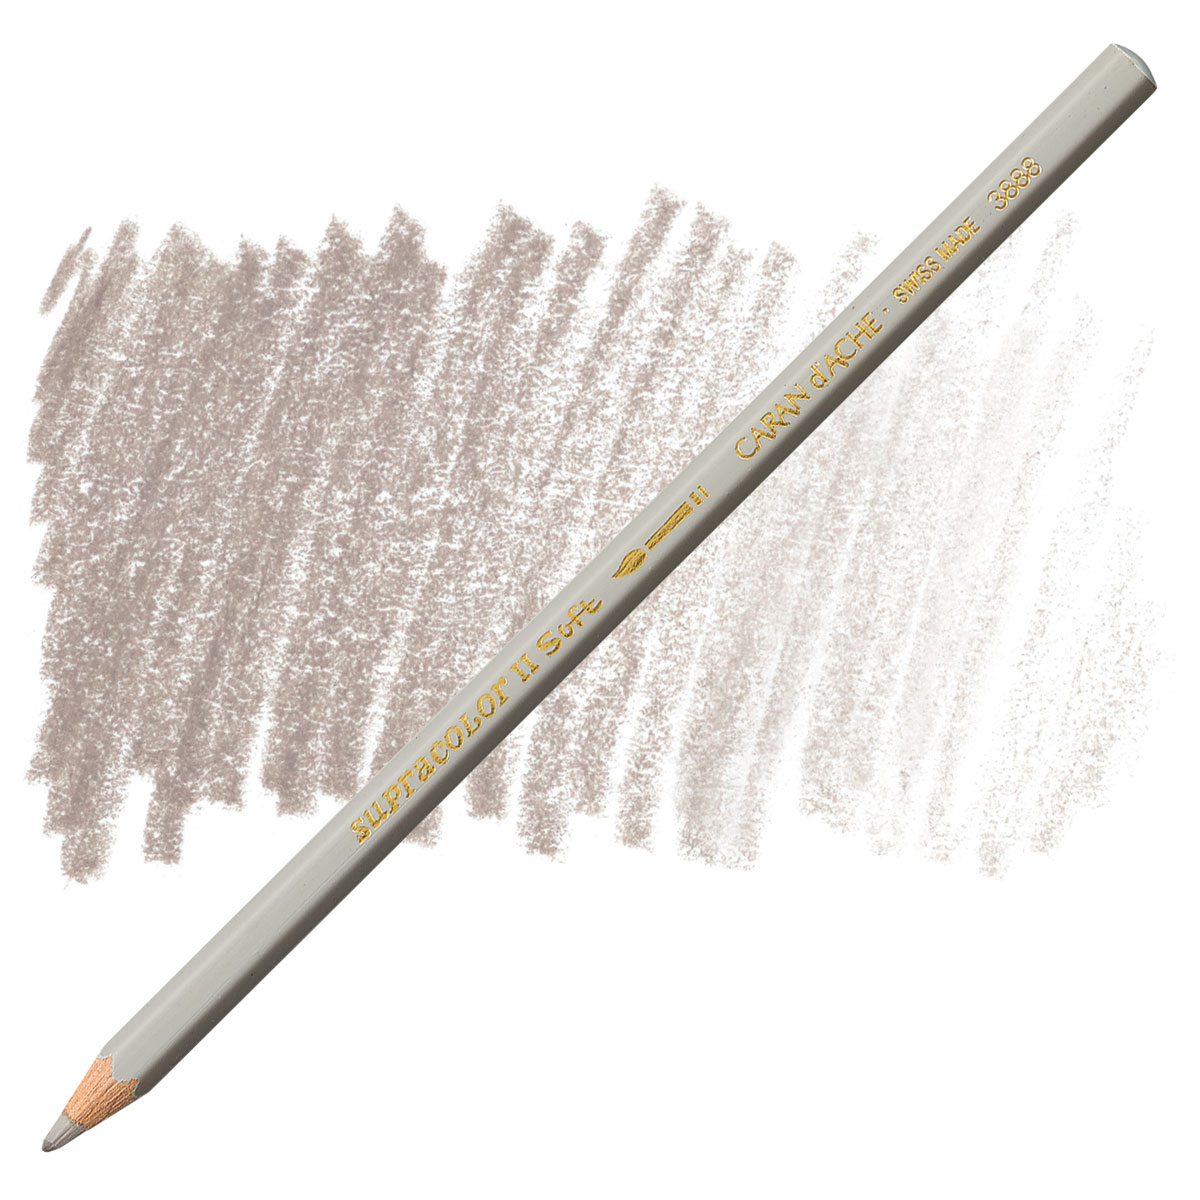 Caran D'Ache Supracolor Soft Aquarelle Watercolor Pencils Metal Box 80 Count